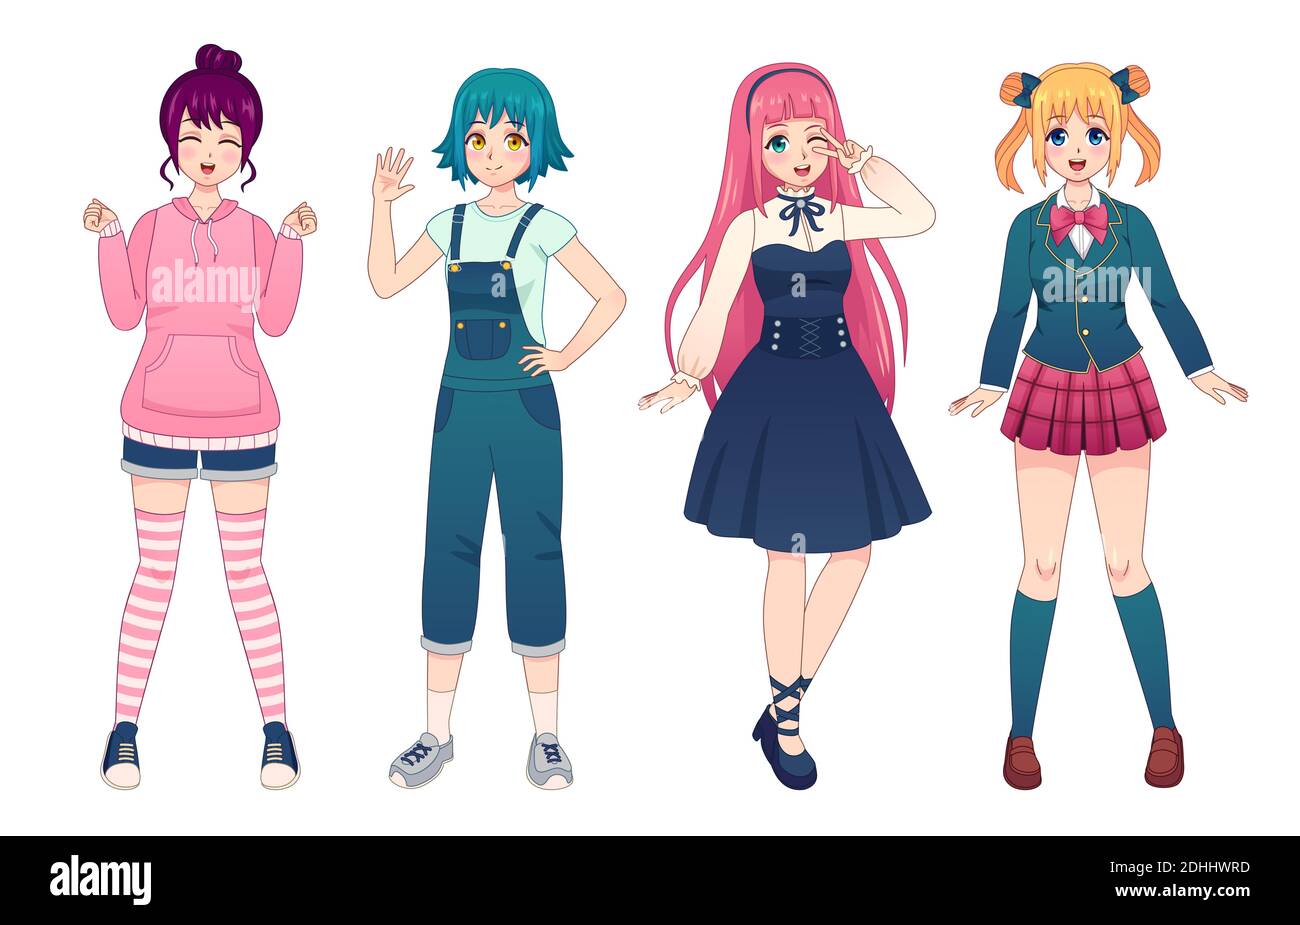 Filles Anime. Belle manga japonaise filles en uniforme, lolita style robe, salopette et sweat à capuche. Ensemble de vecteurs de poses femelles kawaii heureux Illustration de Vecteur